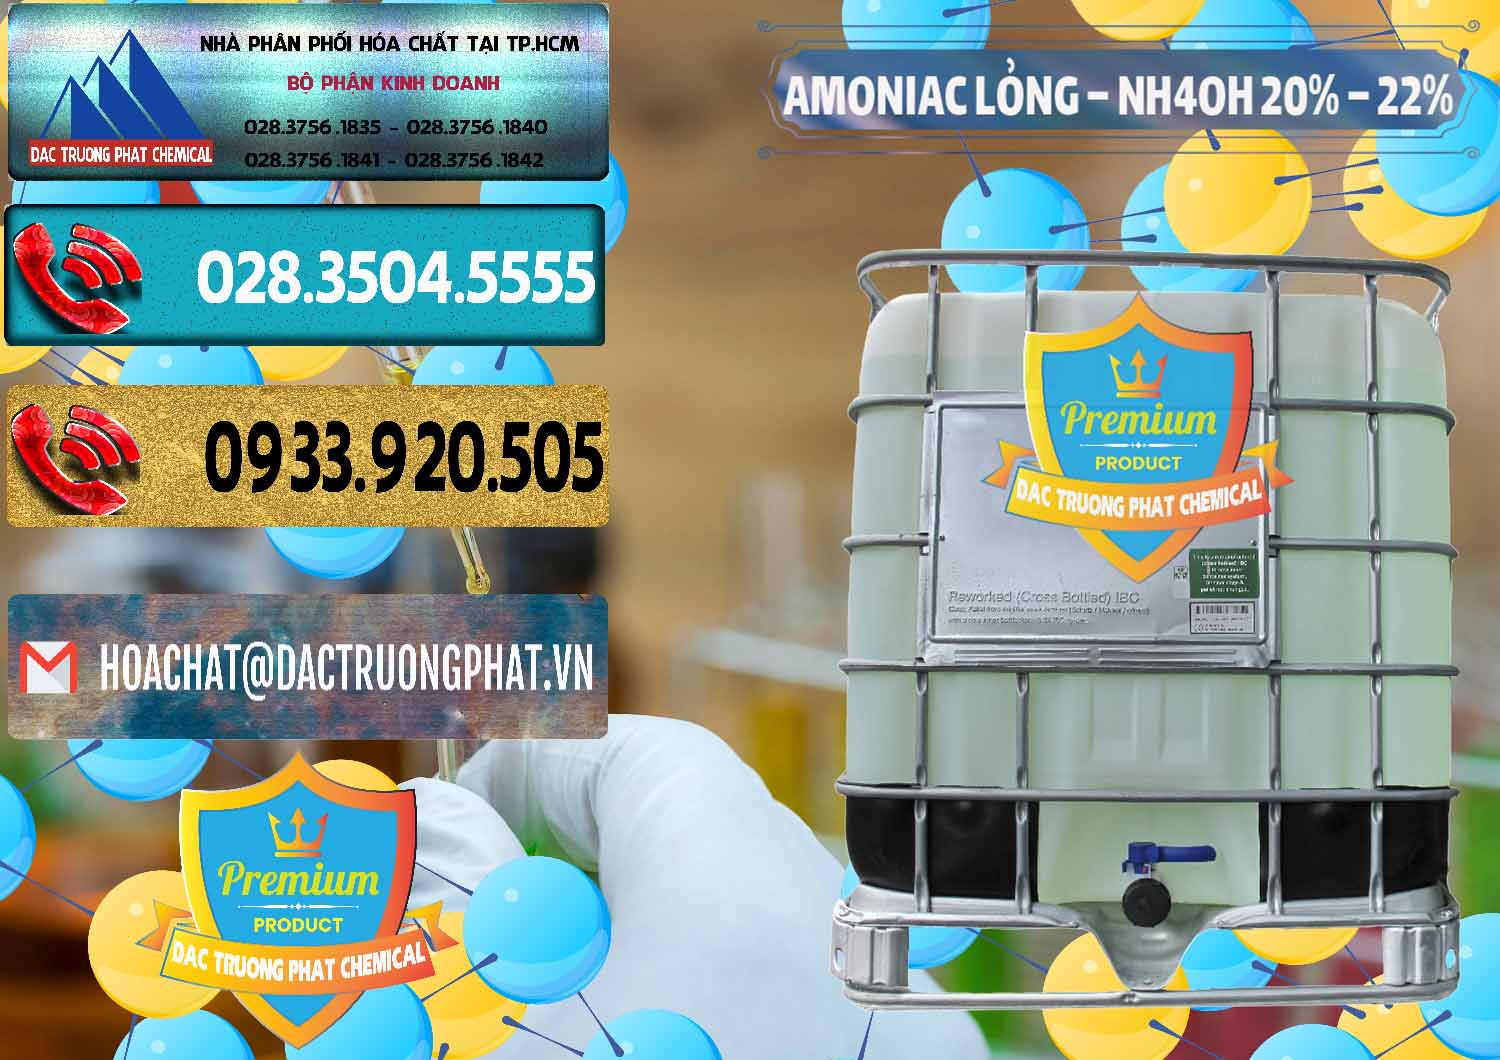 Nơi cung ứng & phân phối Amoniac Lỏng – NH4OH 20% – 22% Việt Nam - 0185 - Chuyên phân phối và bán hóa chất tại TP.HCM - hoachatdetnhuom.com